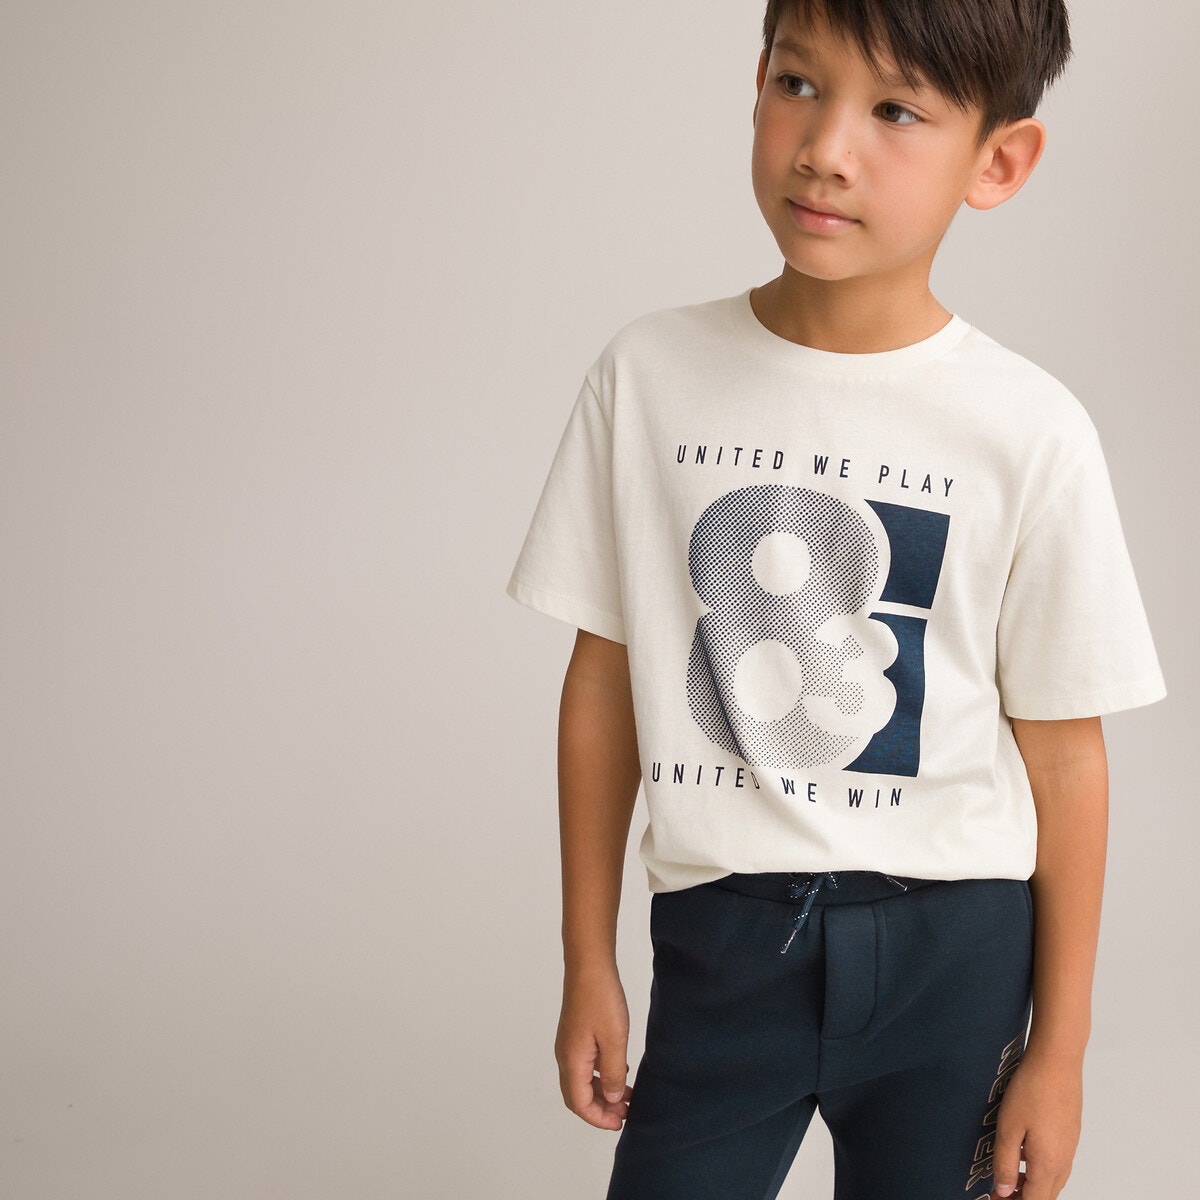 Μόδα > Παιδικά > Αγόρι > T-shirt, πόλο > Κοντά μανίκια T-shirt με ανάγλυφη στάμπα μπροστά